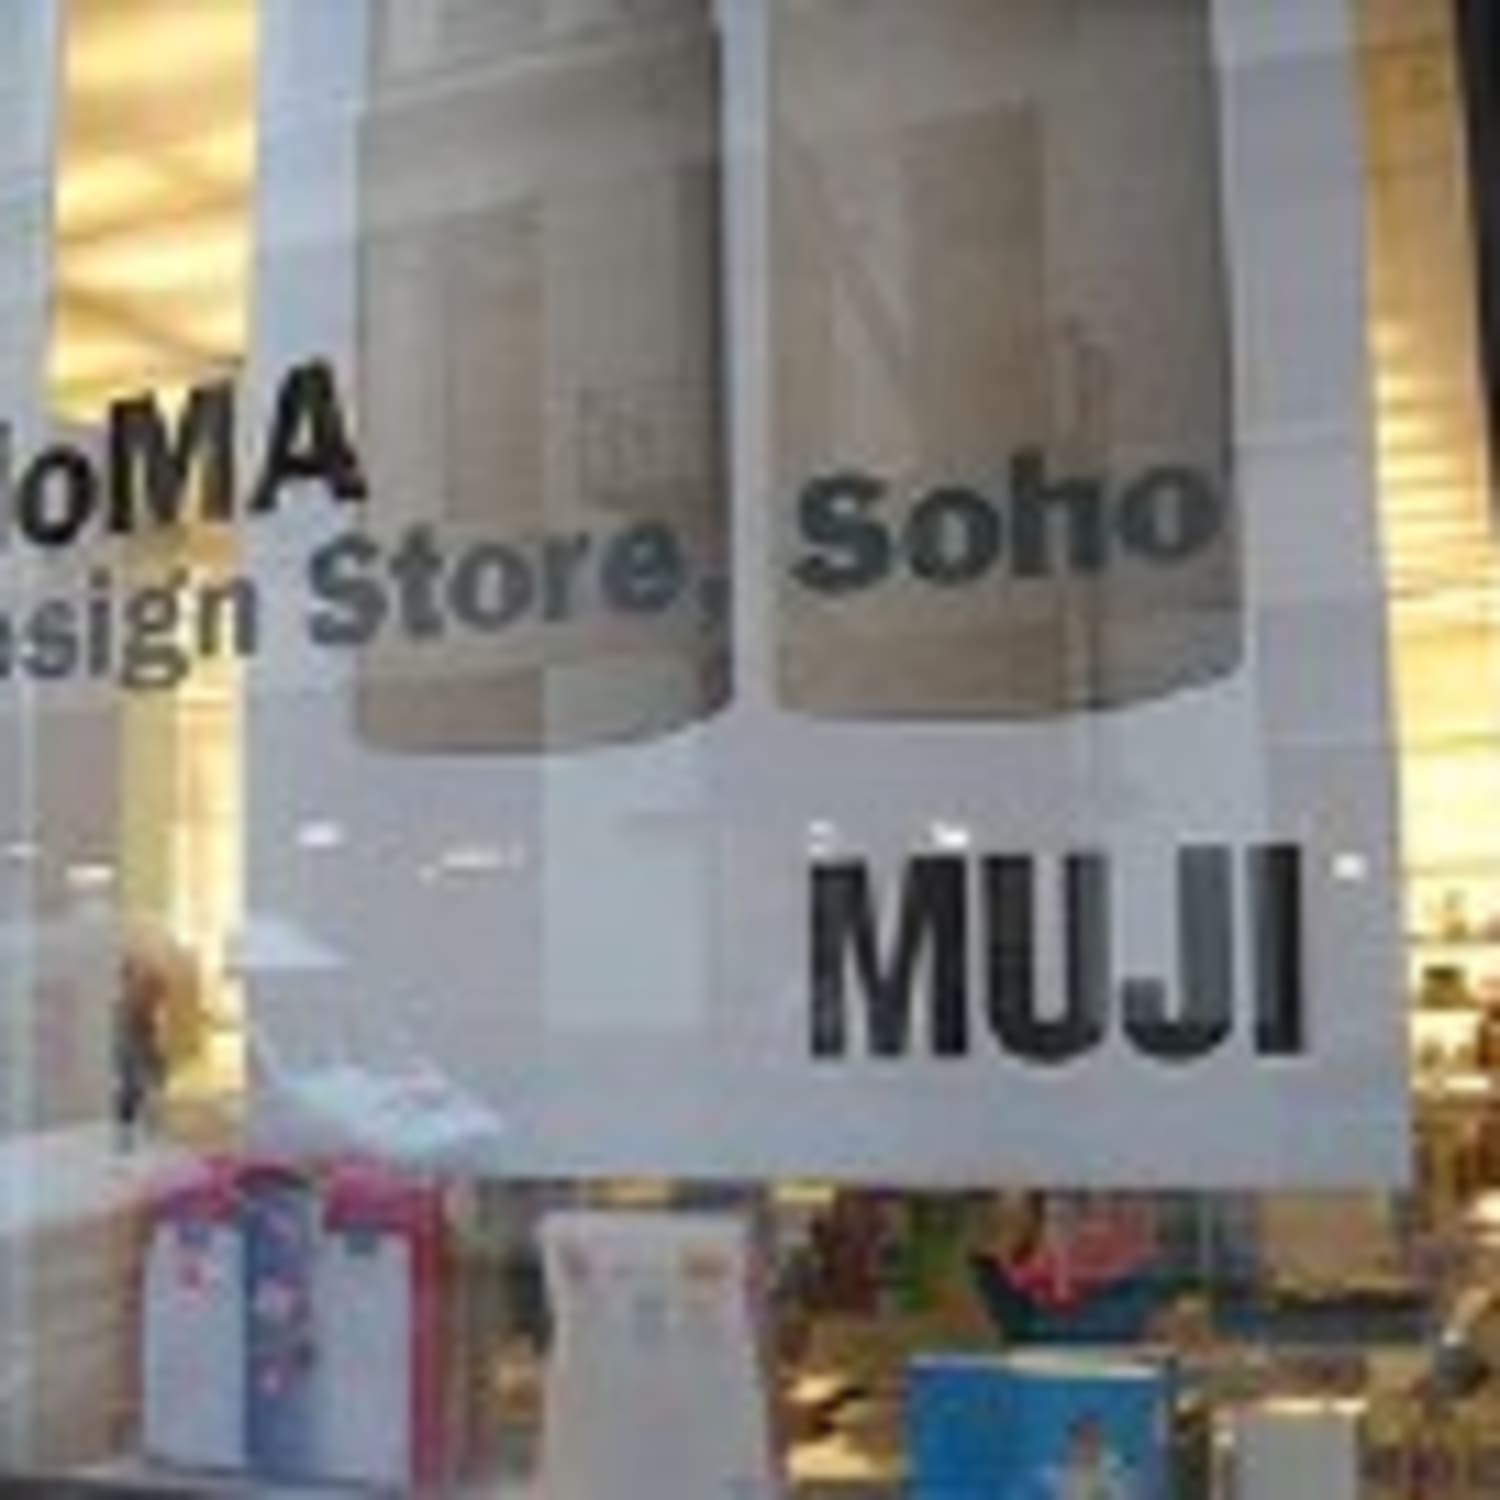 camouflage udløser skør MoMA Store and Muji | Kitchn